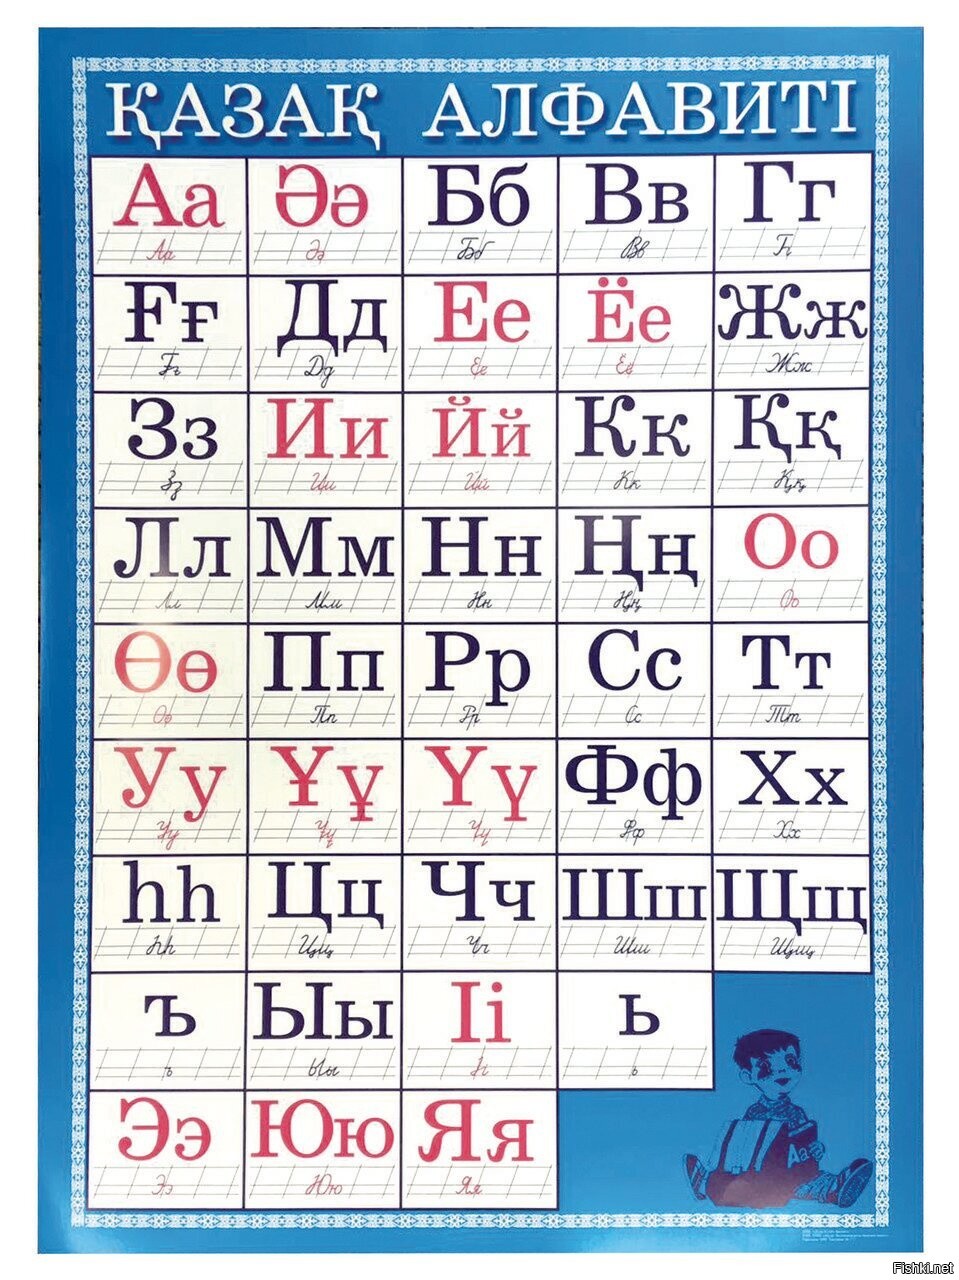 Алфавит Казахстана